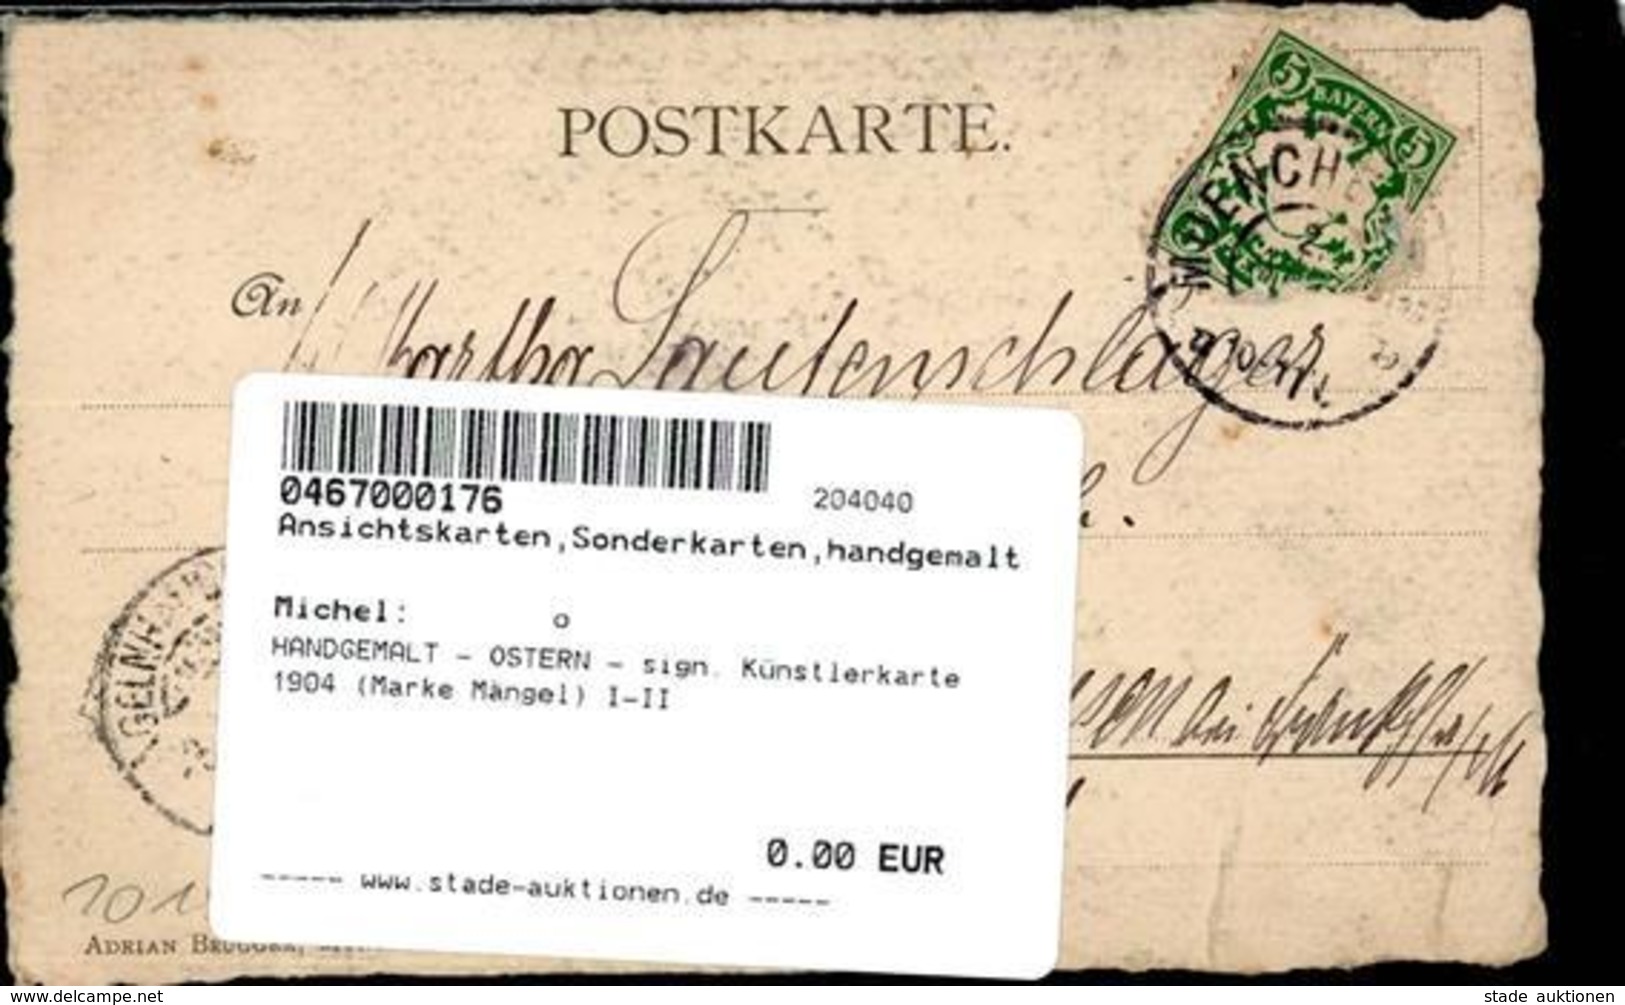 HANDGEMALT - OSTERN - Sign. Künstlerkarte 1904 (Marke Mängel) I-II - Ohne Zuordnung